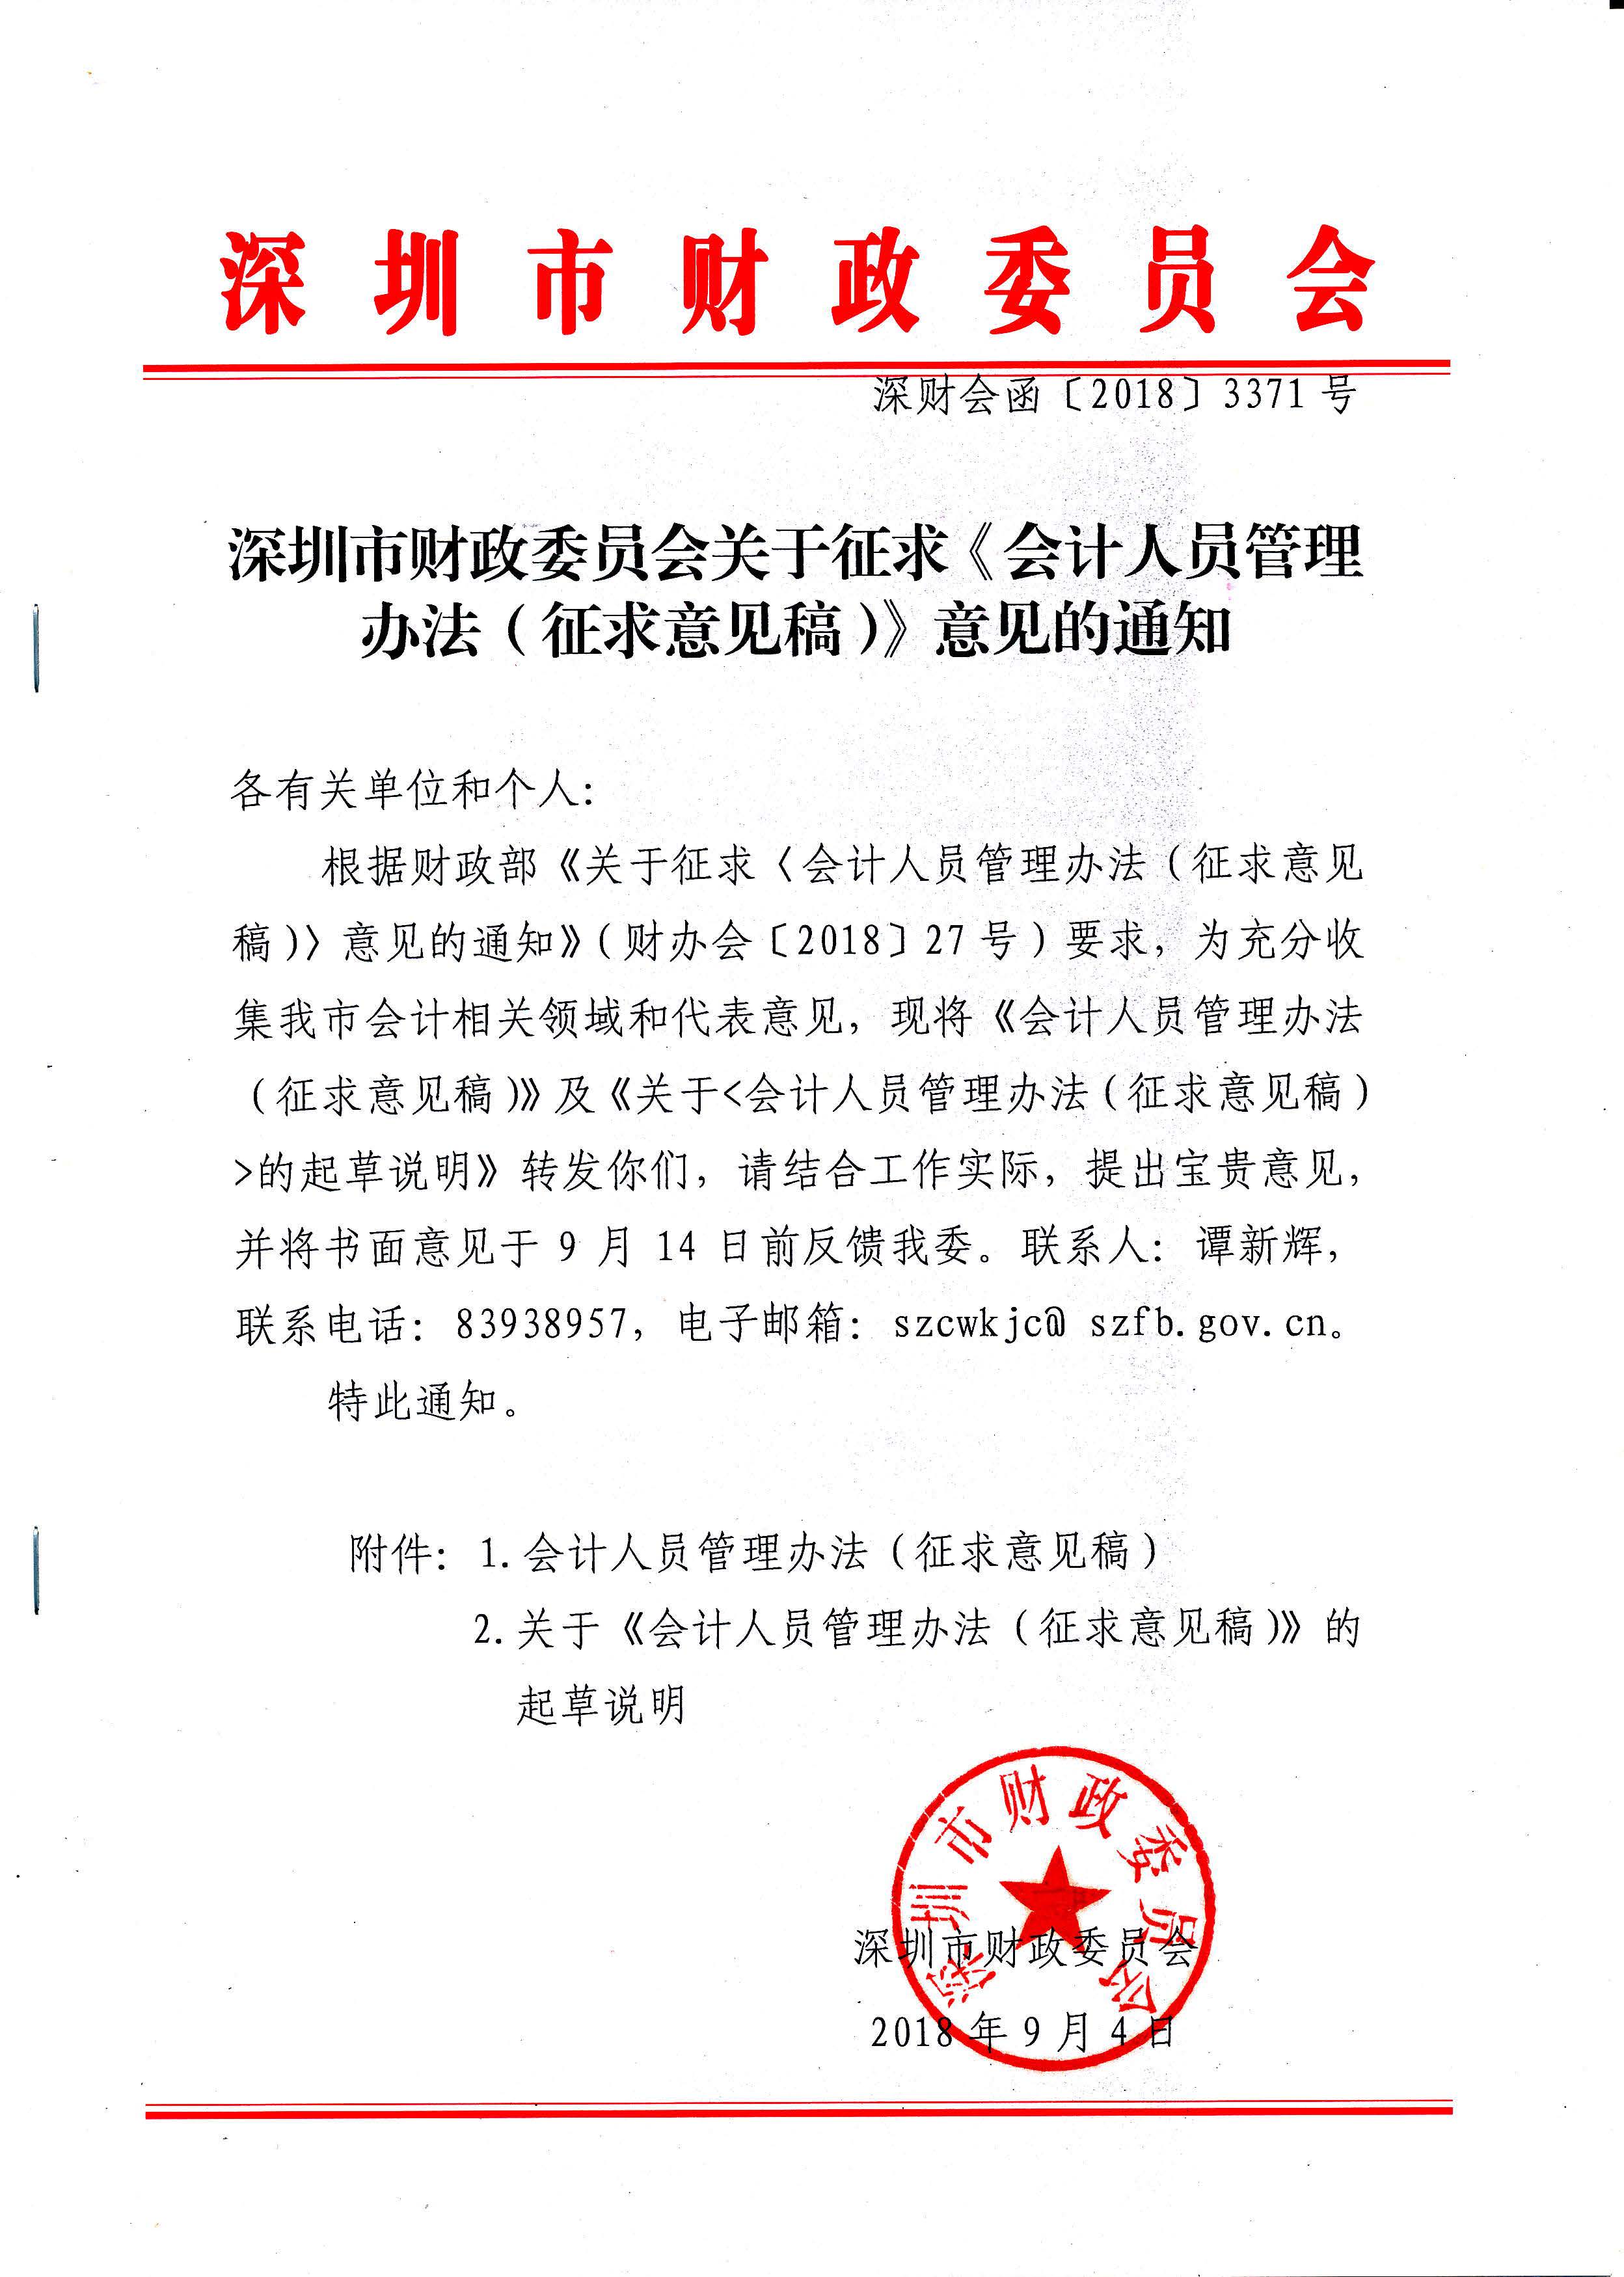 深圳市财政委员会关于征求《会计人员管理办法（征求意见稿）》意见的通知.jpg